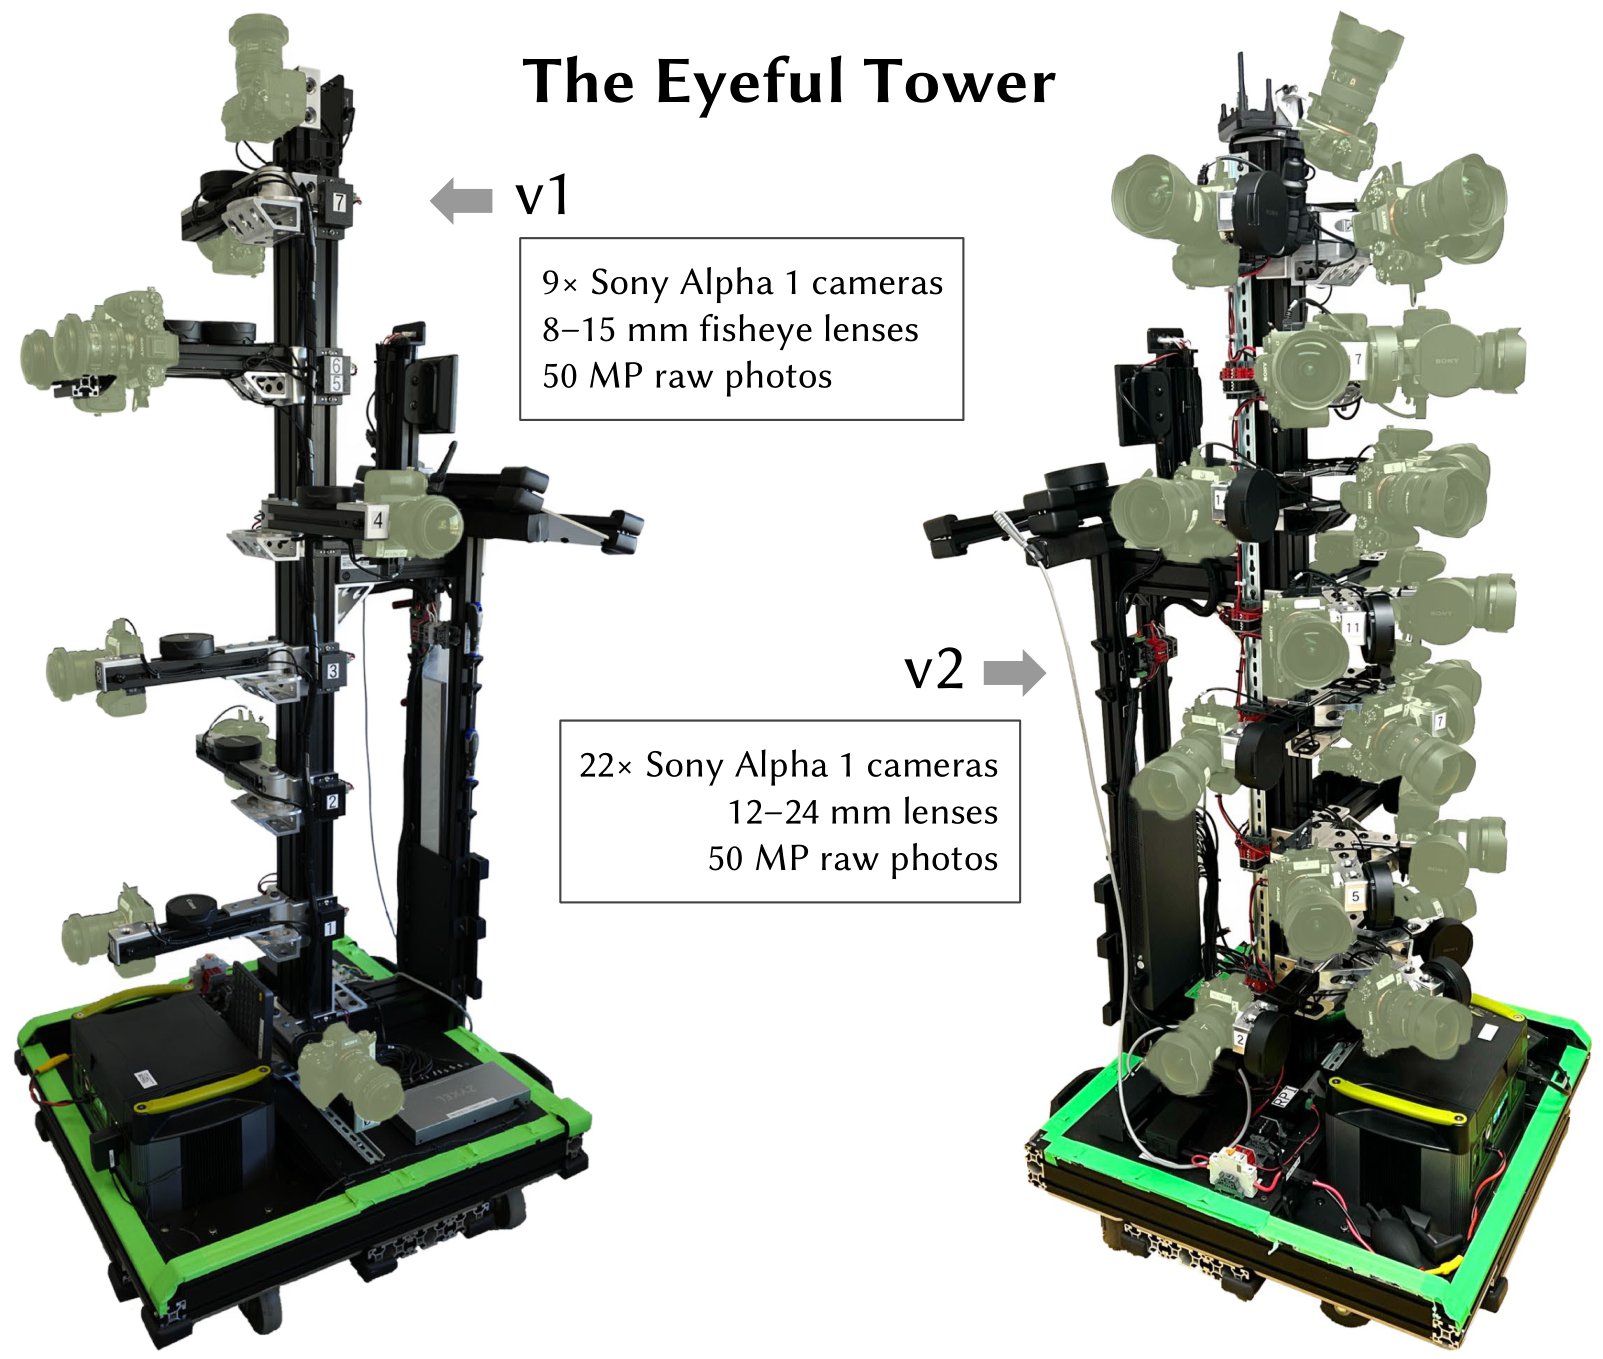 Eyeful Tower Version Comparison